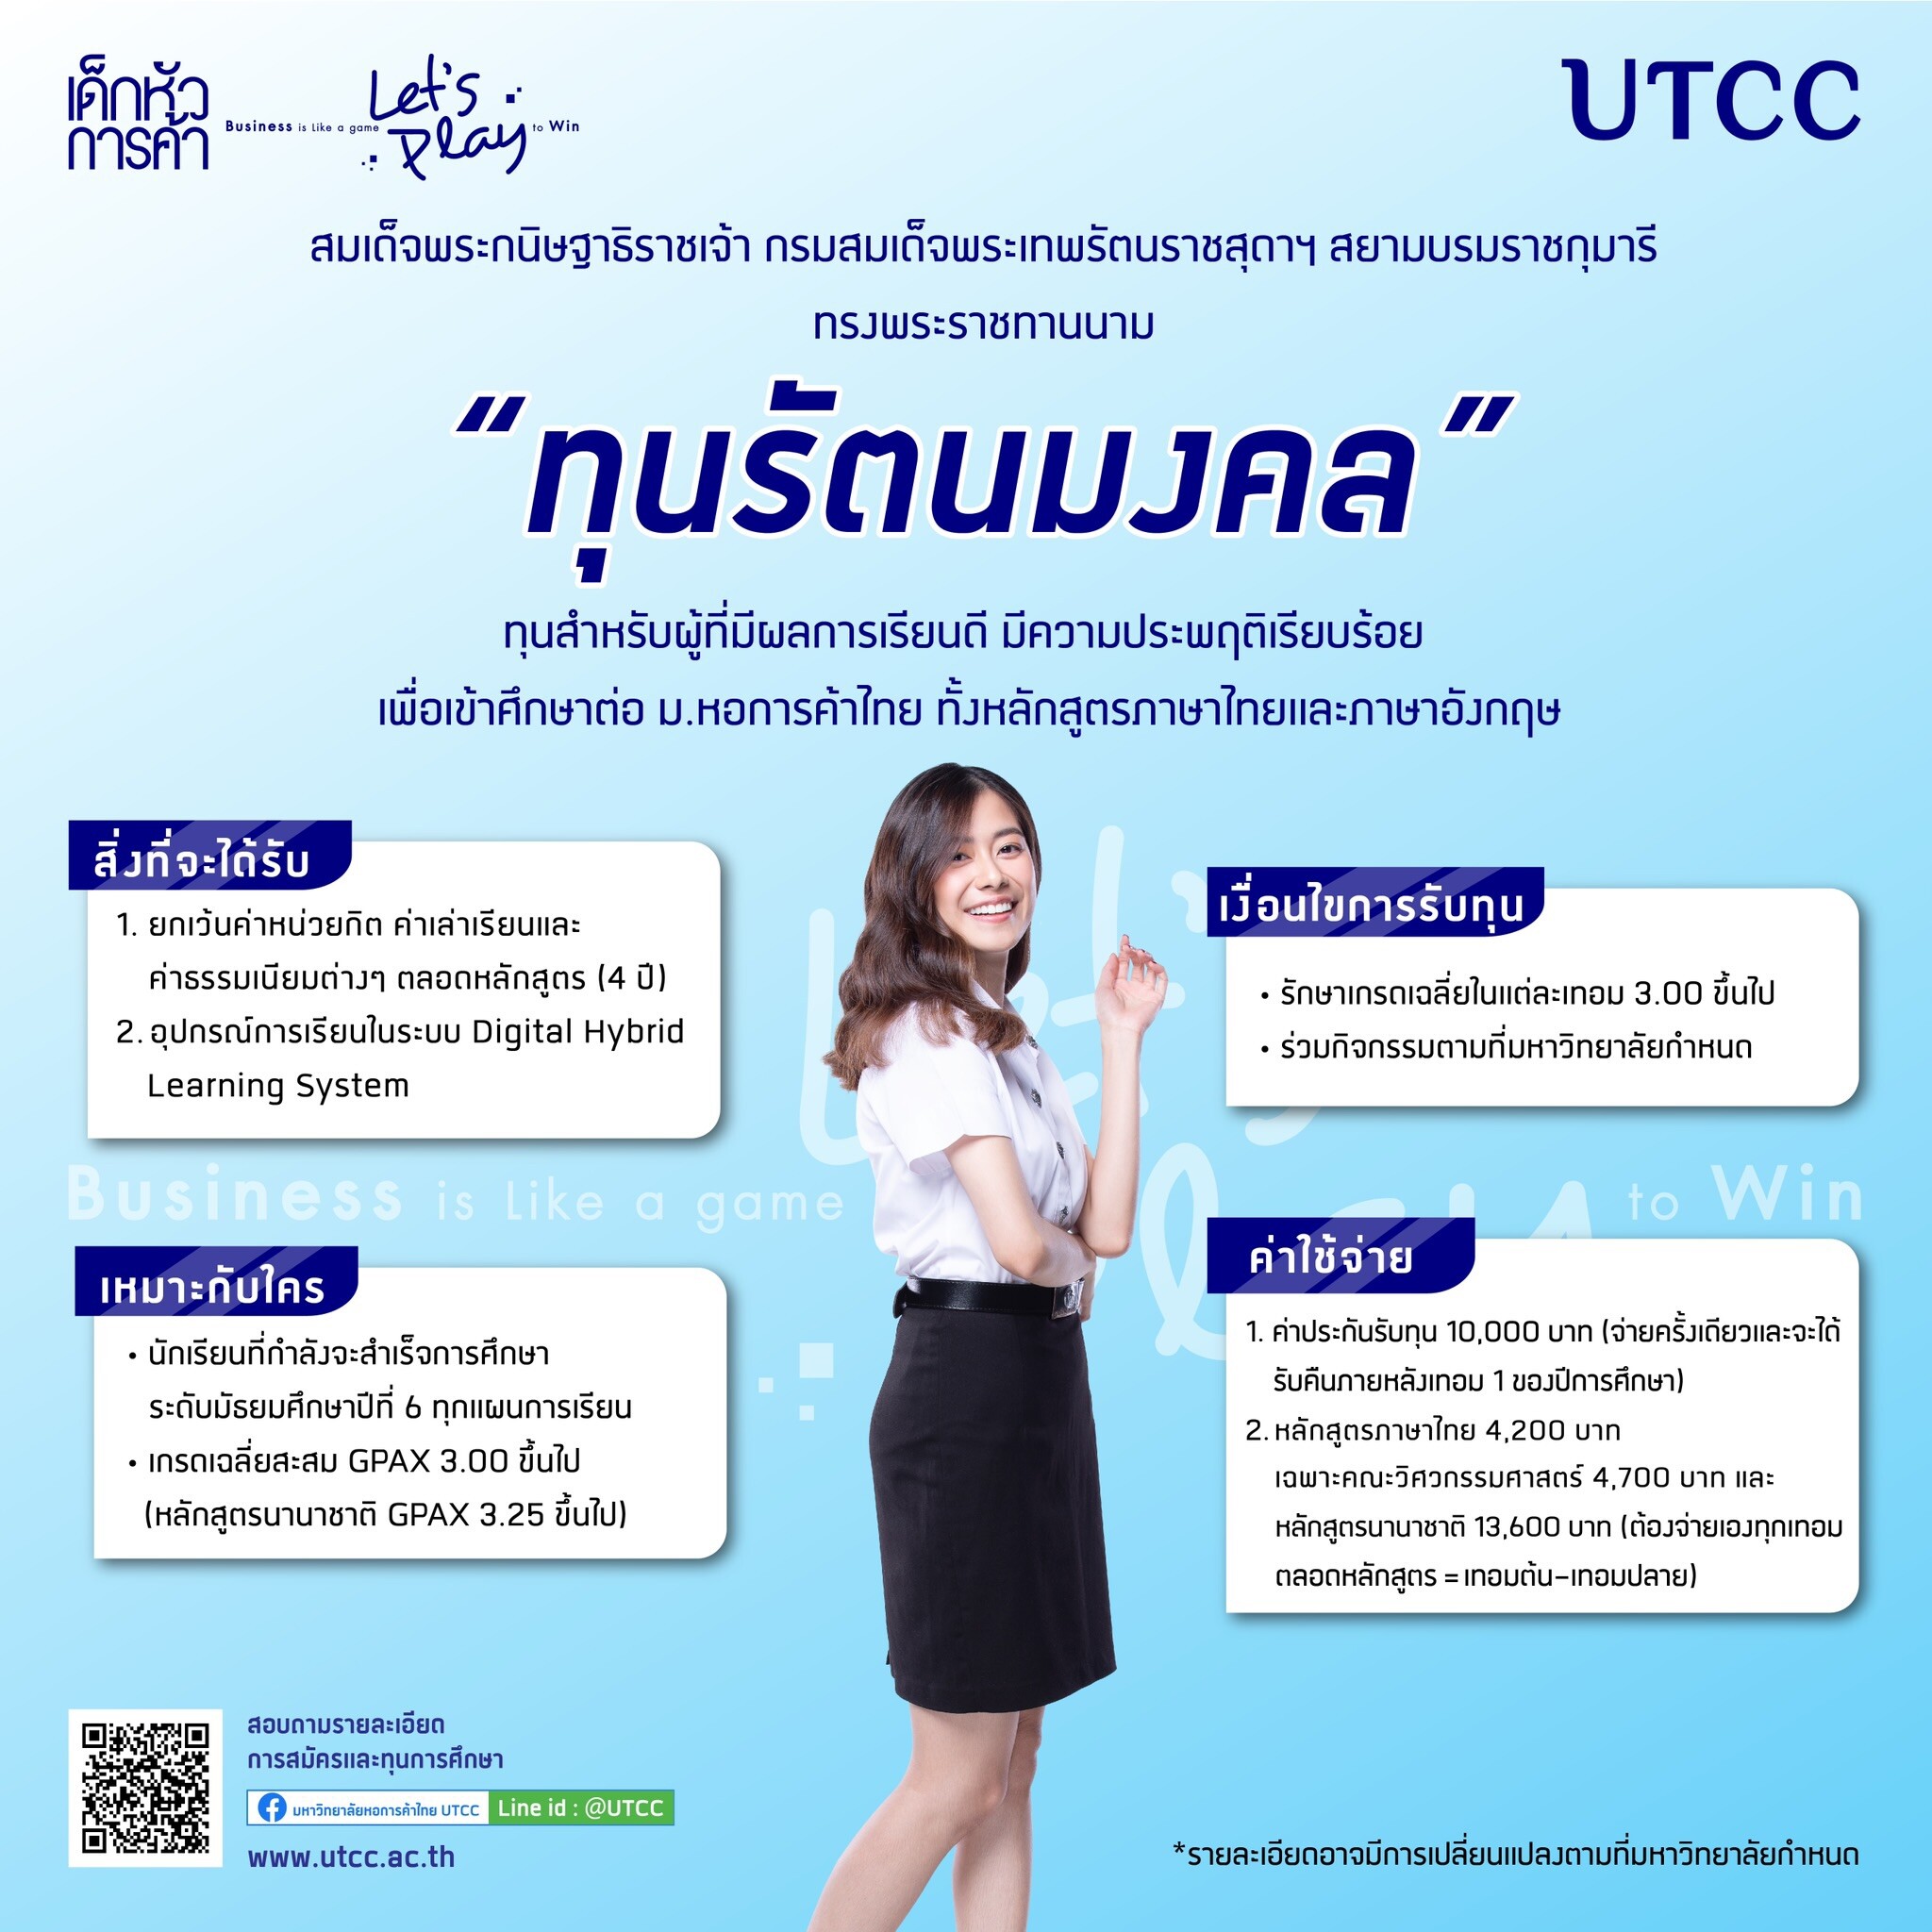 มหาวิทยาลัยหอการค้าไทย มอบทุนเรียนดี ตลอดหลักสูตร "ทุนรัตนมงคล" ประจำปีการศึกษา 2564